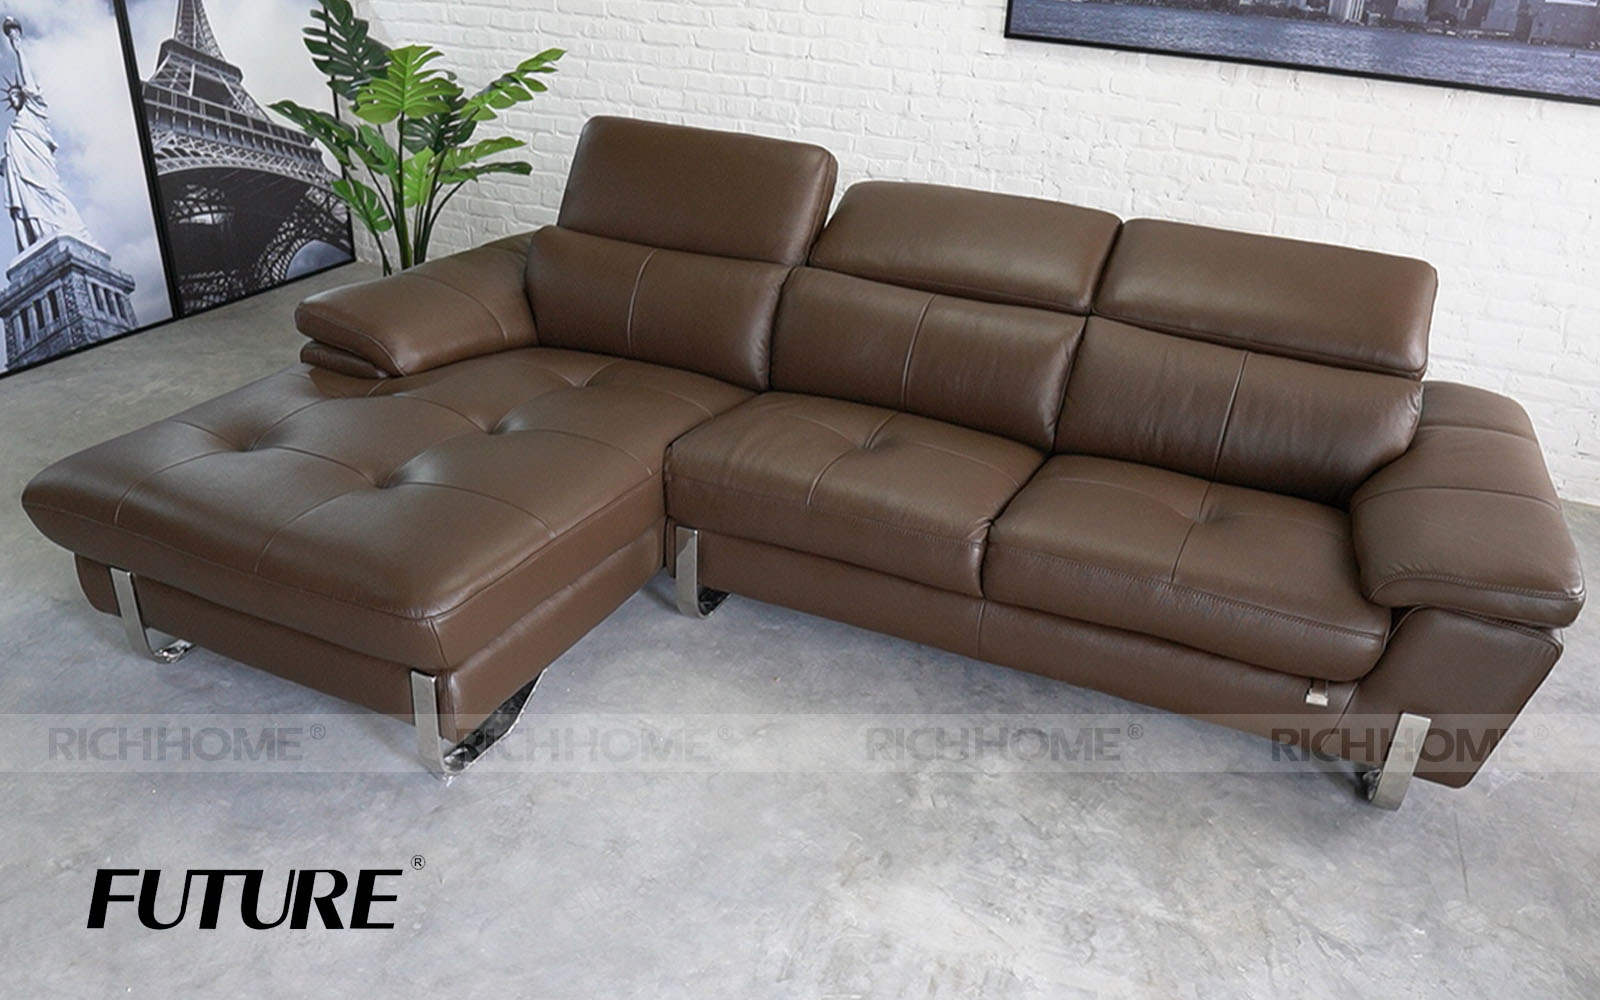 Xem ngay: Các mẫu sofa nhập khẩu đẹp từ Malaysia - Ảnh 7